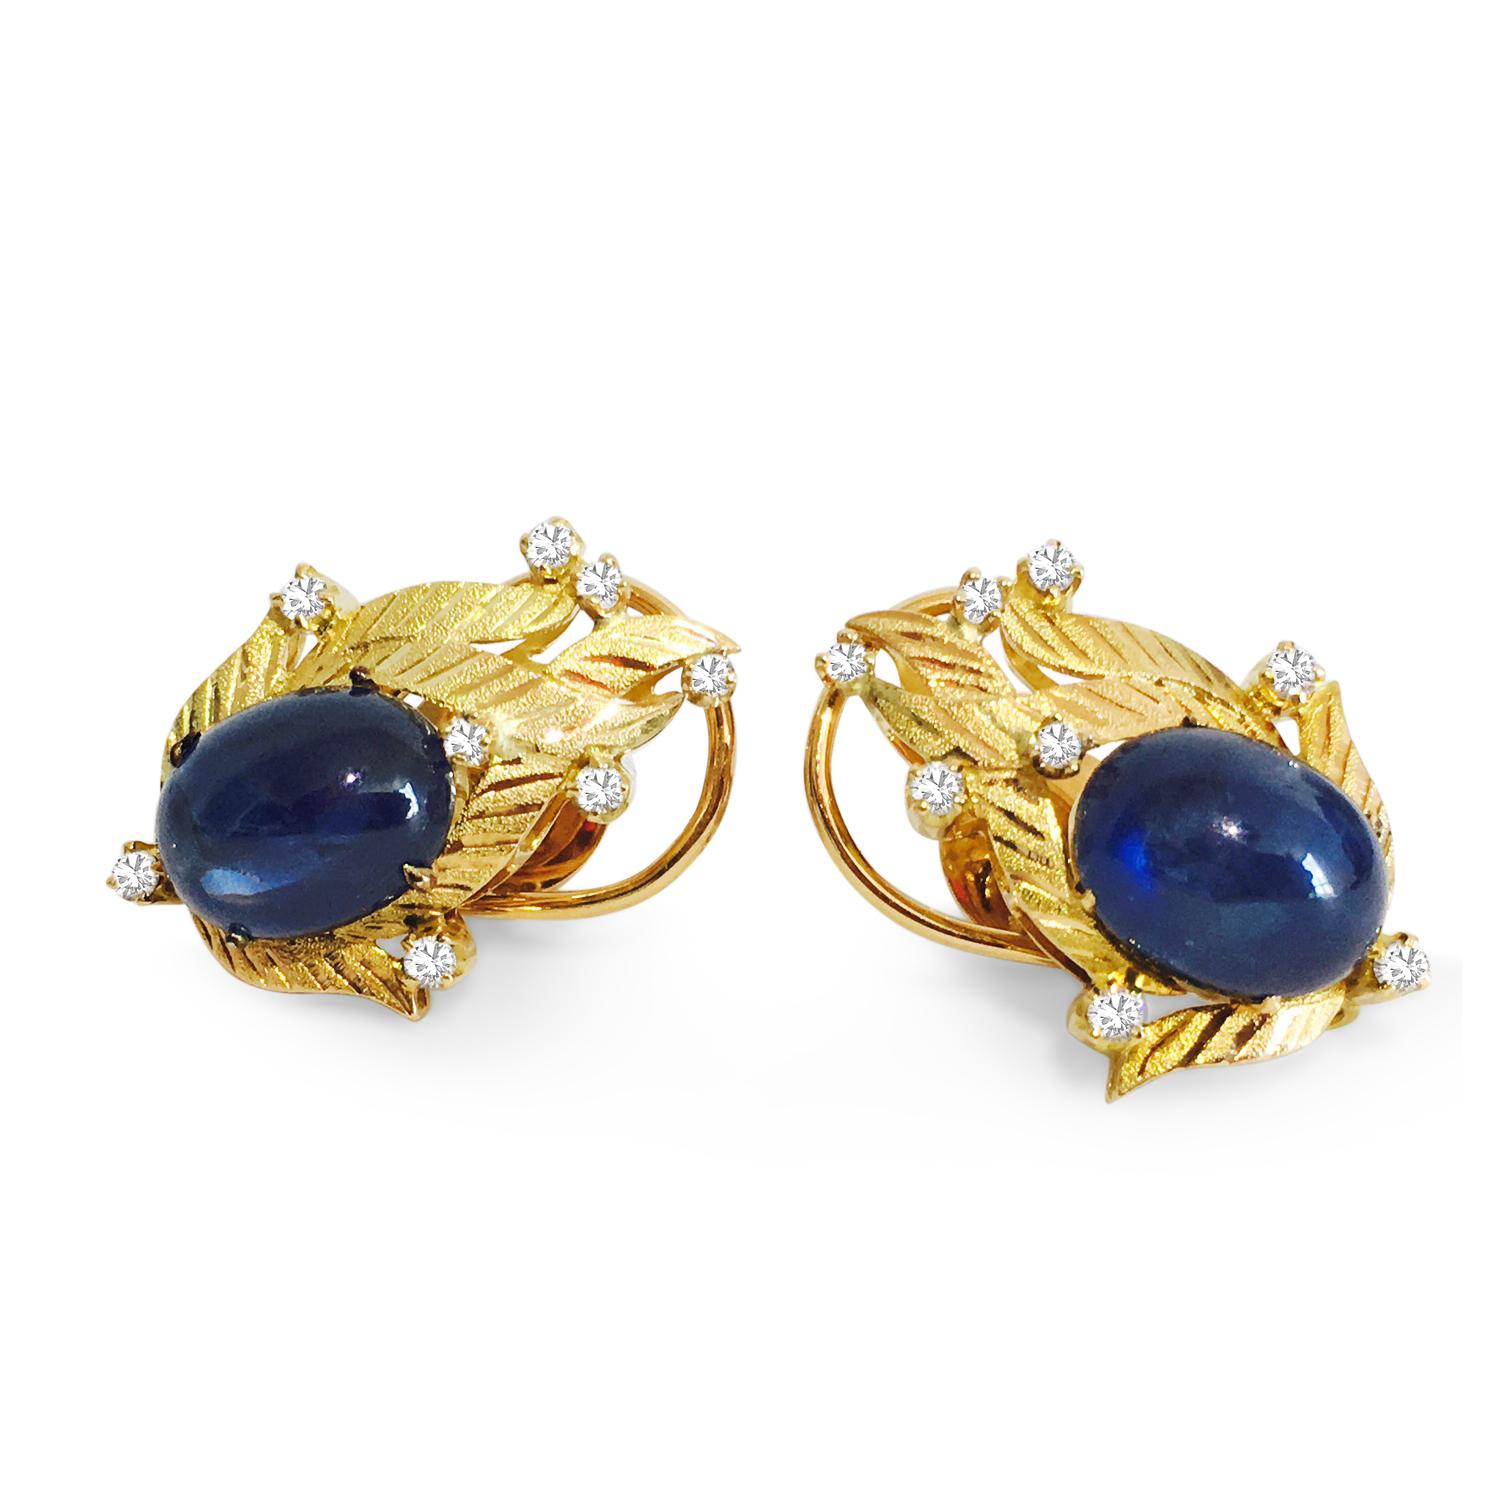 Schwelgen Sie in der Opulenz dieser Vintage-Ohrringe mit Diamanten und blauen Saphiren, die aus luxuriösem 18-karätigem Gelbgold gefertigt sind. Im Mittelpunkt jedes Ohrrings steht ein atemberaubender blauer Saphir von 14,50 Karat, der in der Erde